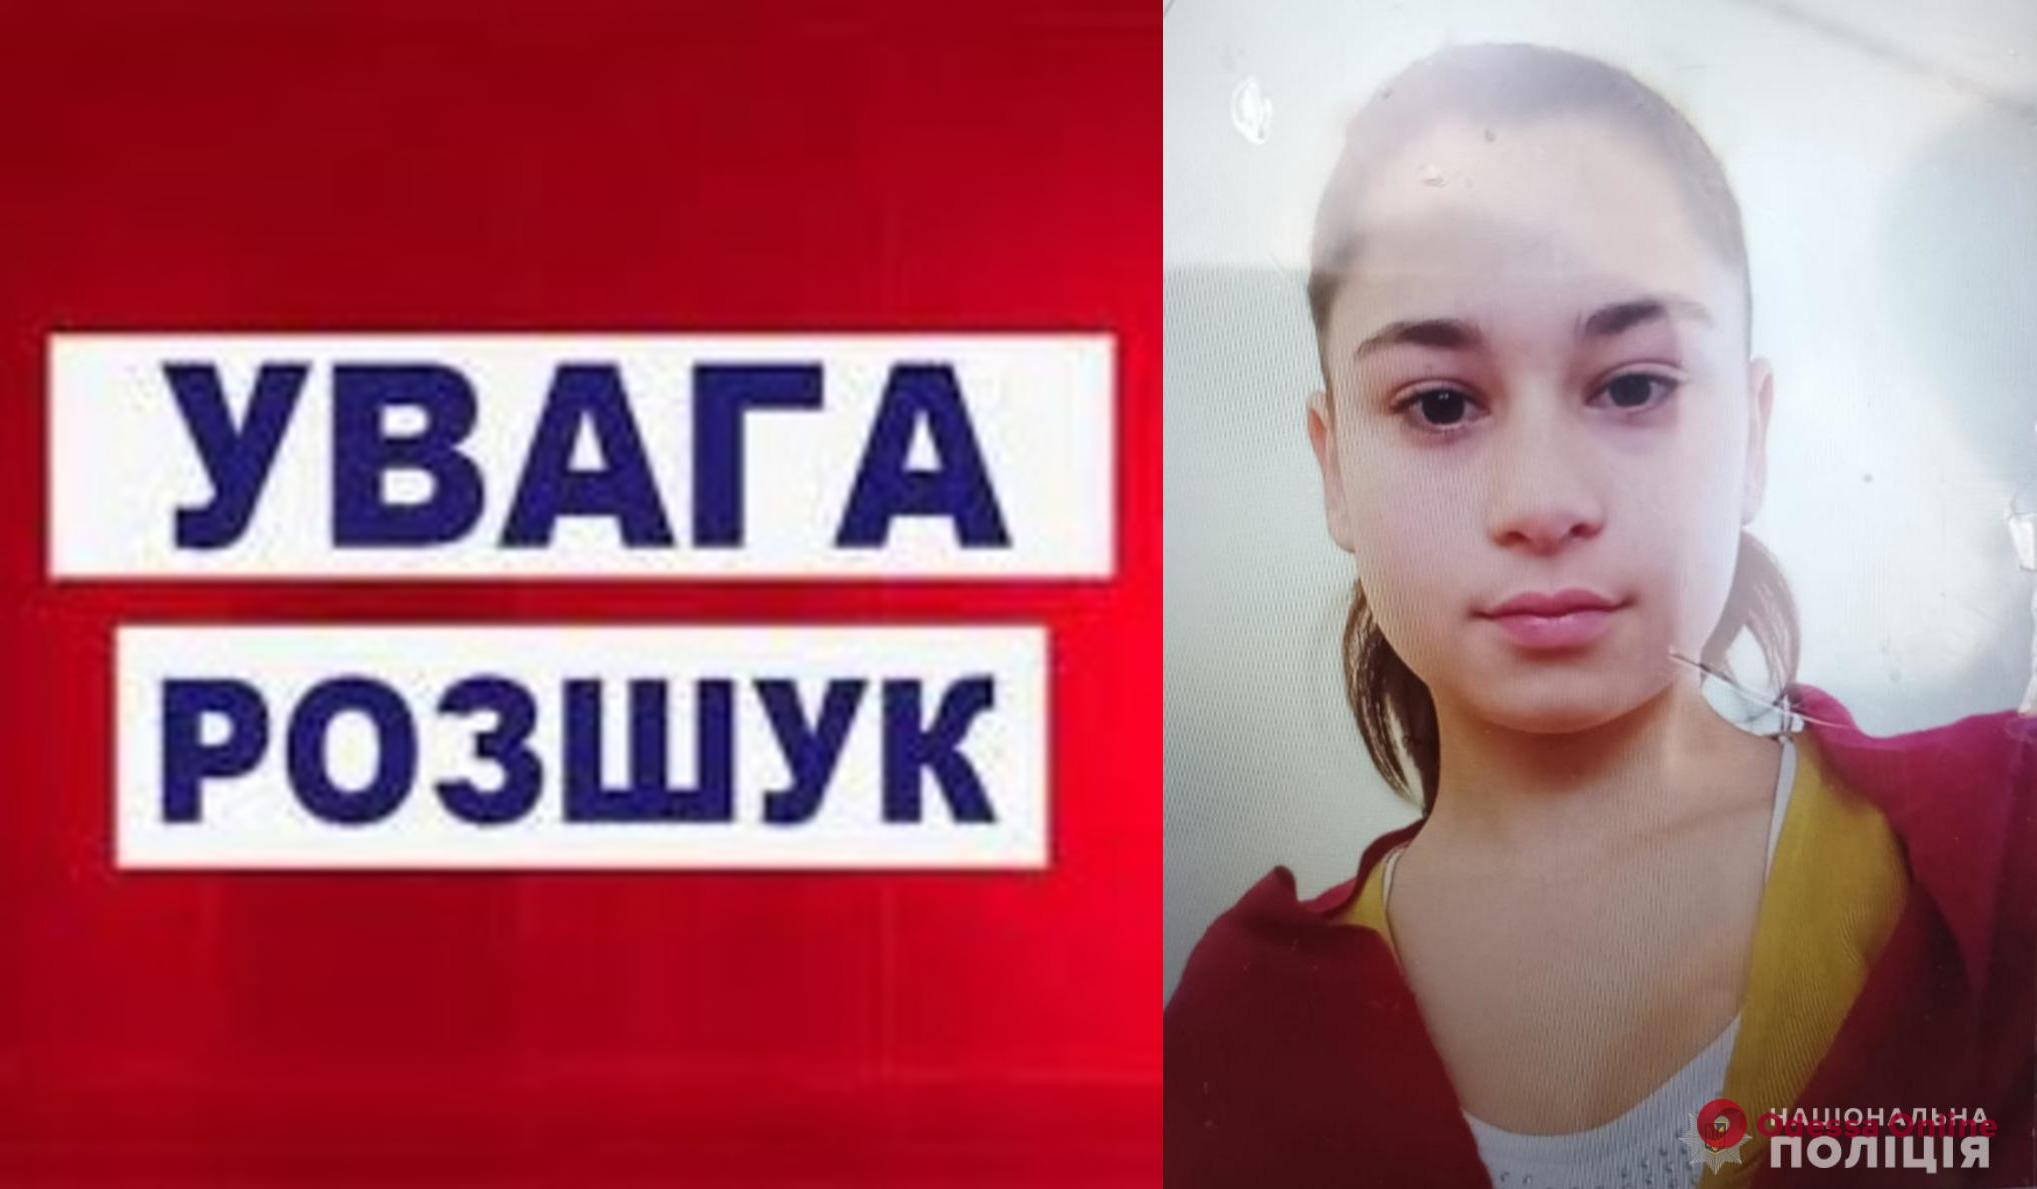 В Одесской области разыскивают пропавшую 15-летнюю девочку